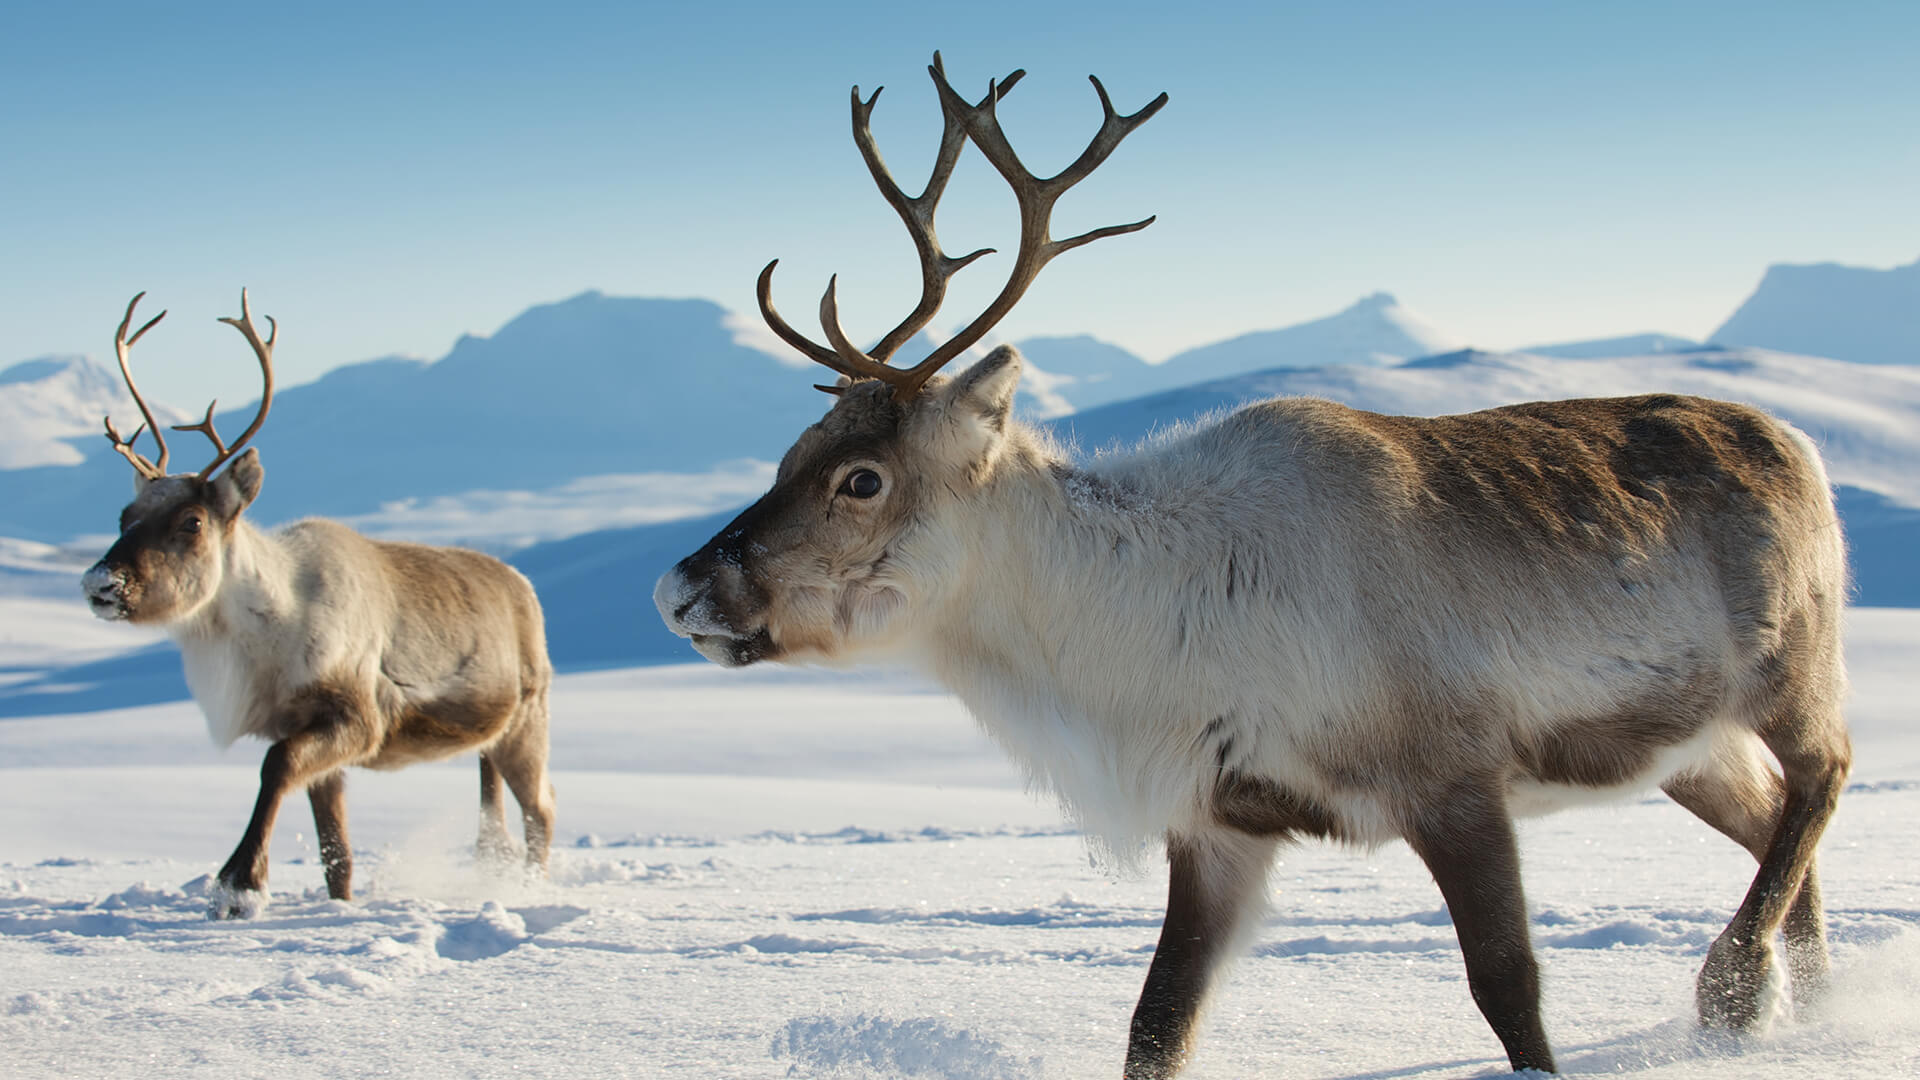 Reindeer in Tromso region, Northern Norway